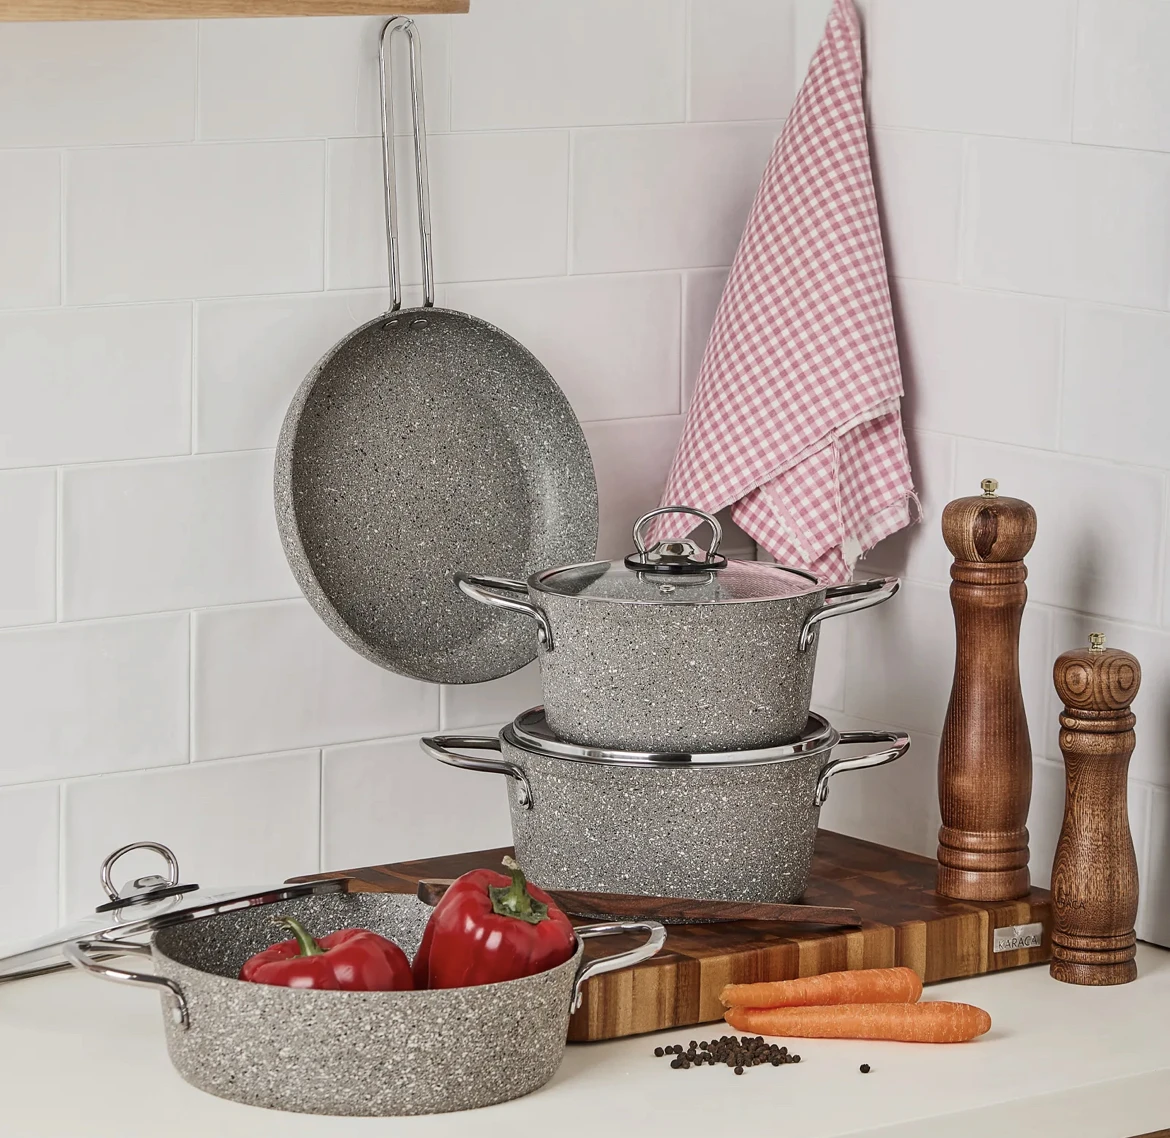 

Biogranit 7 шт набор посуды Кухня поставки удобный с антипригарным покрытием термостойкая сковорода Новый Быстрая доставка серый гранит